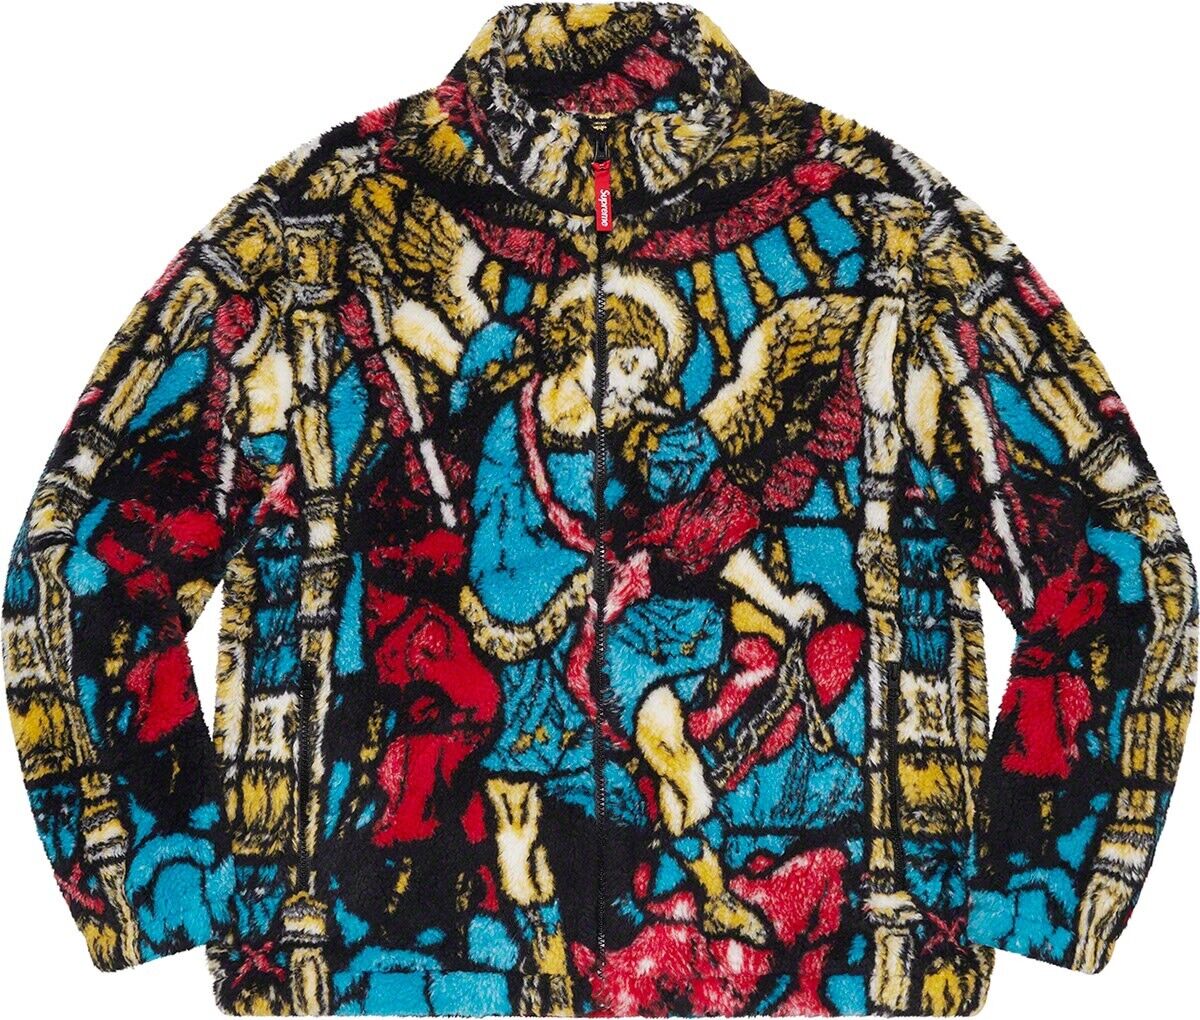 新品 supreme Michael fleece jacket L multi